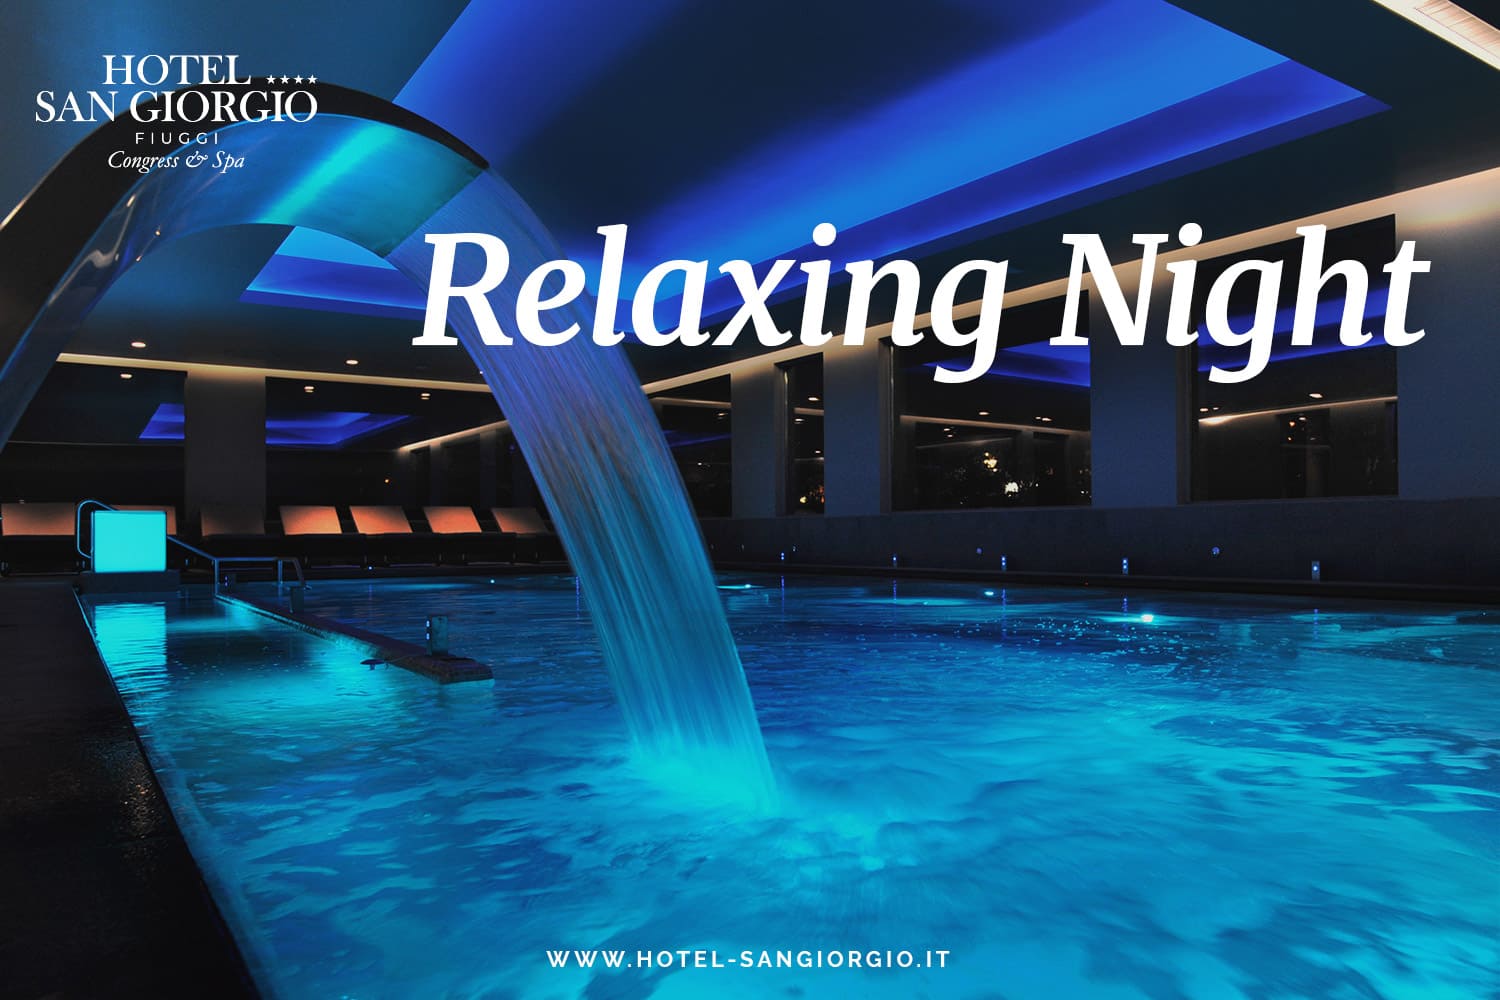 Relaxing-Night-hotel-san-giorno-night-spa-spa-di-notte-notturna-sera-fiuggi-terme-heaven-spa-centro-benessere-congressi-relax-rilassarsi-wellness-massaggi-trattamenti.jpg